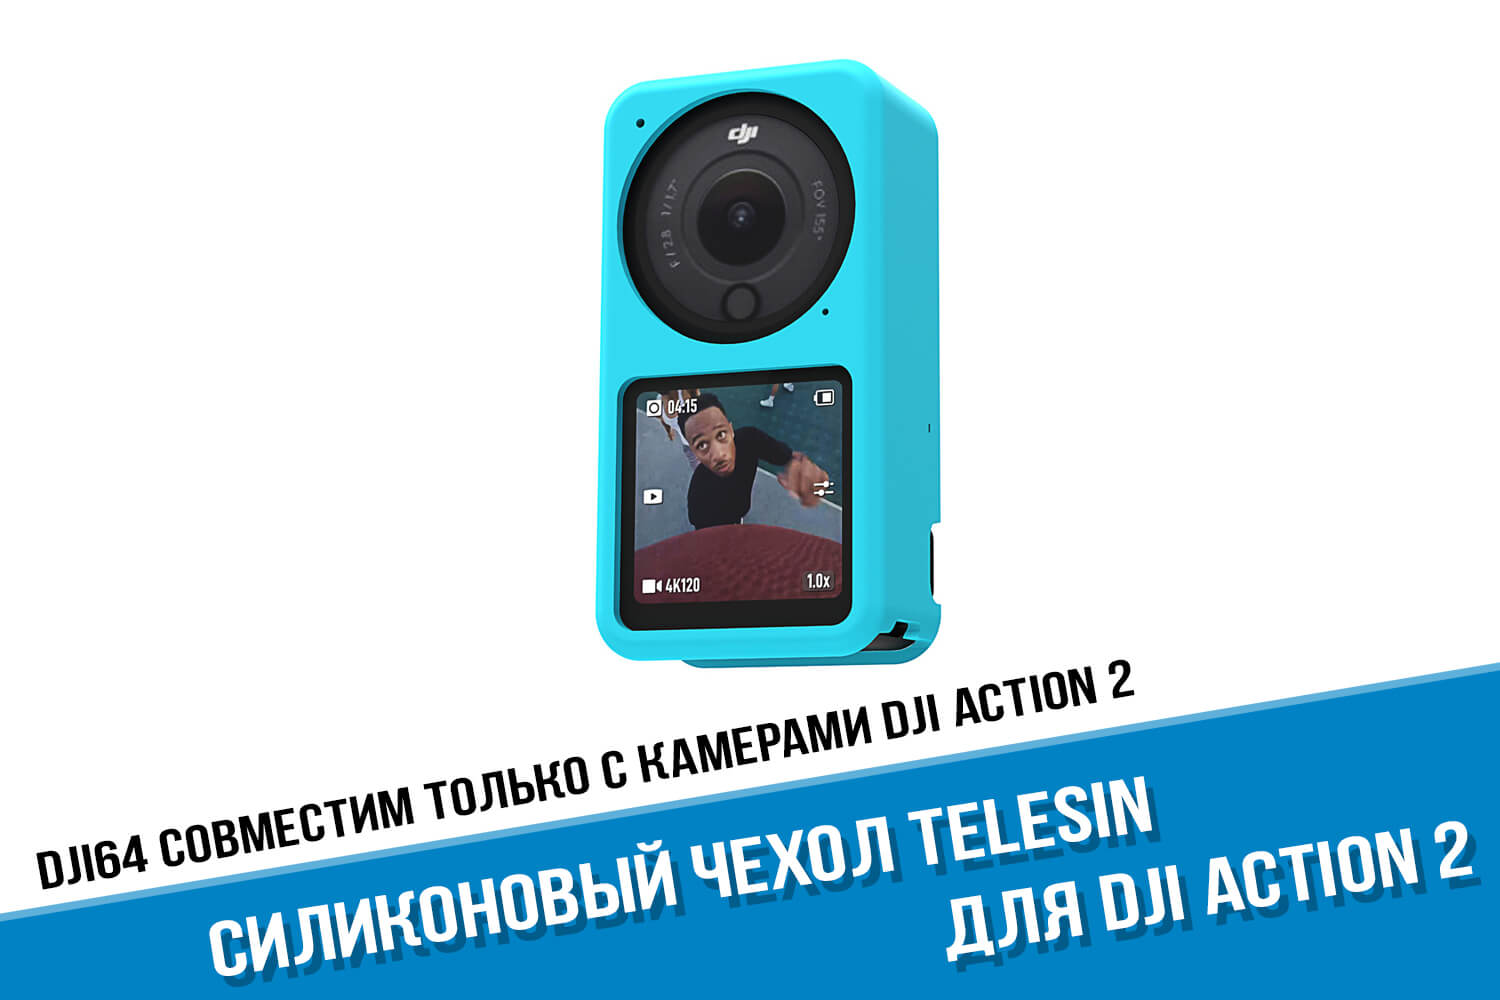 Чехол для экшн-камеры DJI Action 2 голубого цвета